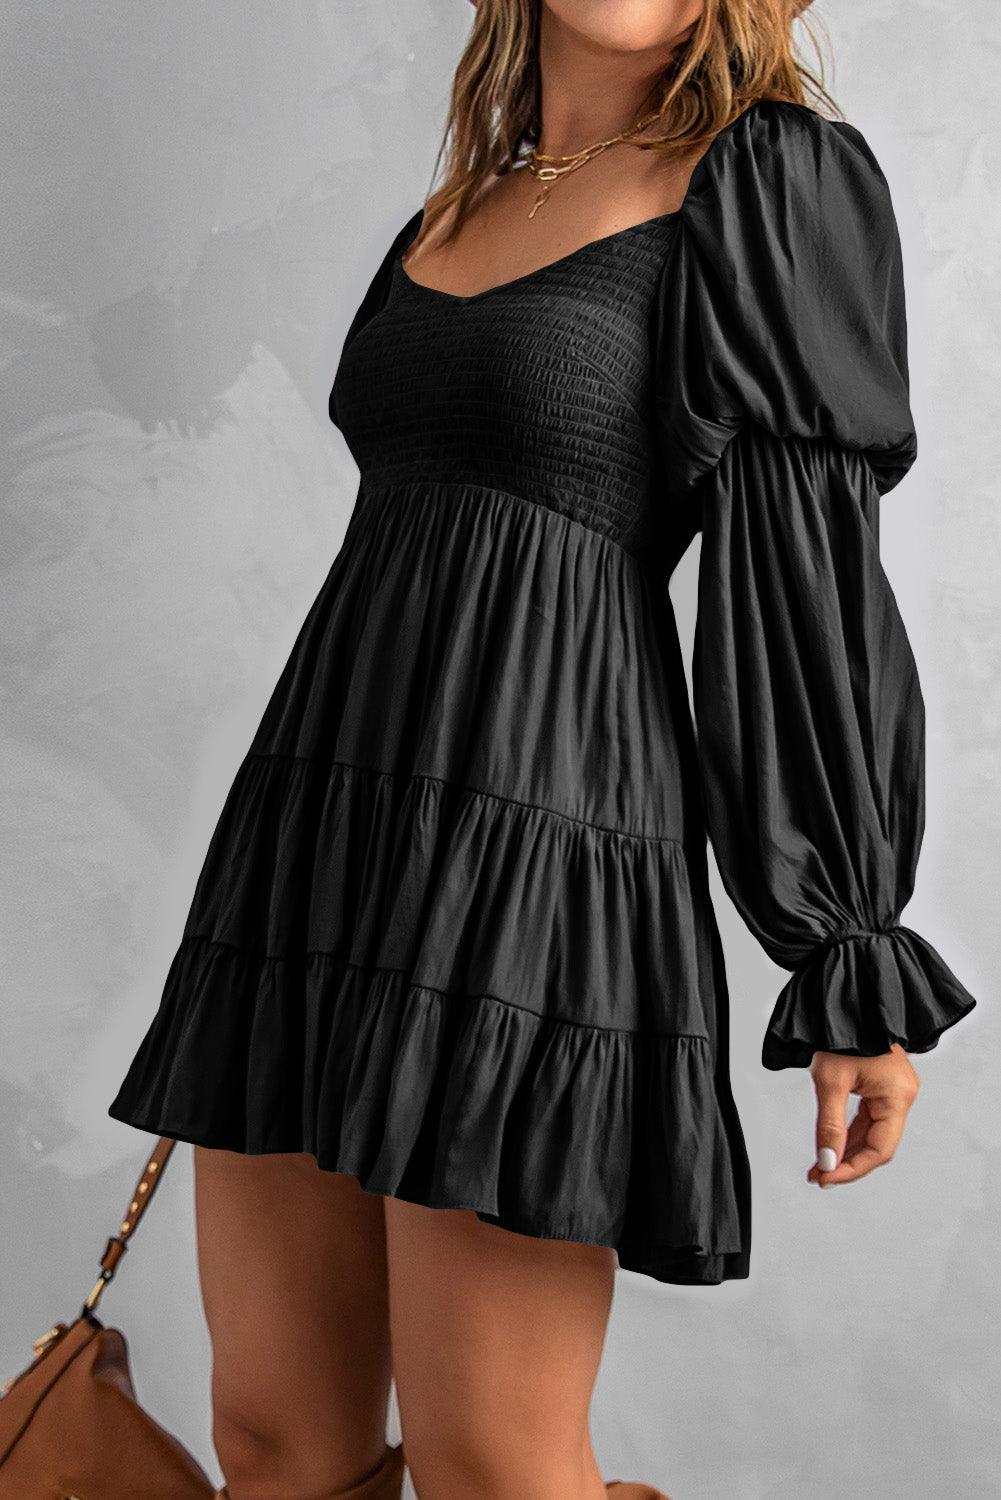 Smocked Off-Shoulder Tiered Mini Dress - Flyclothing LLC